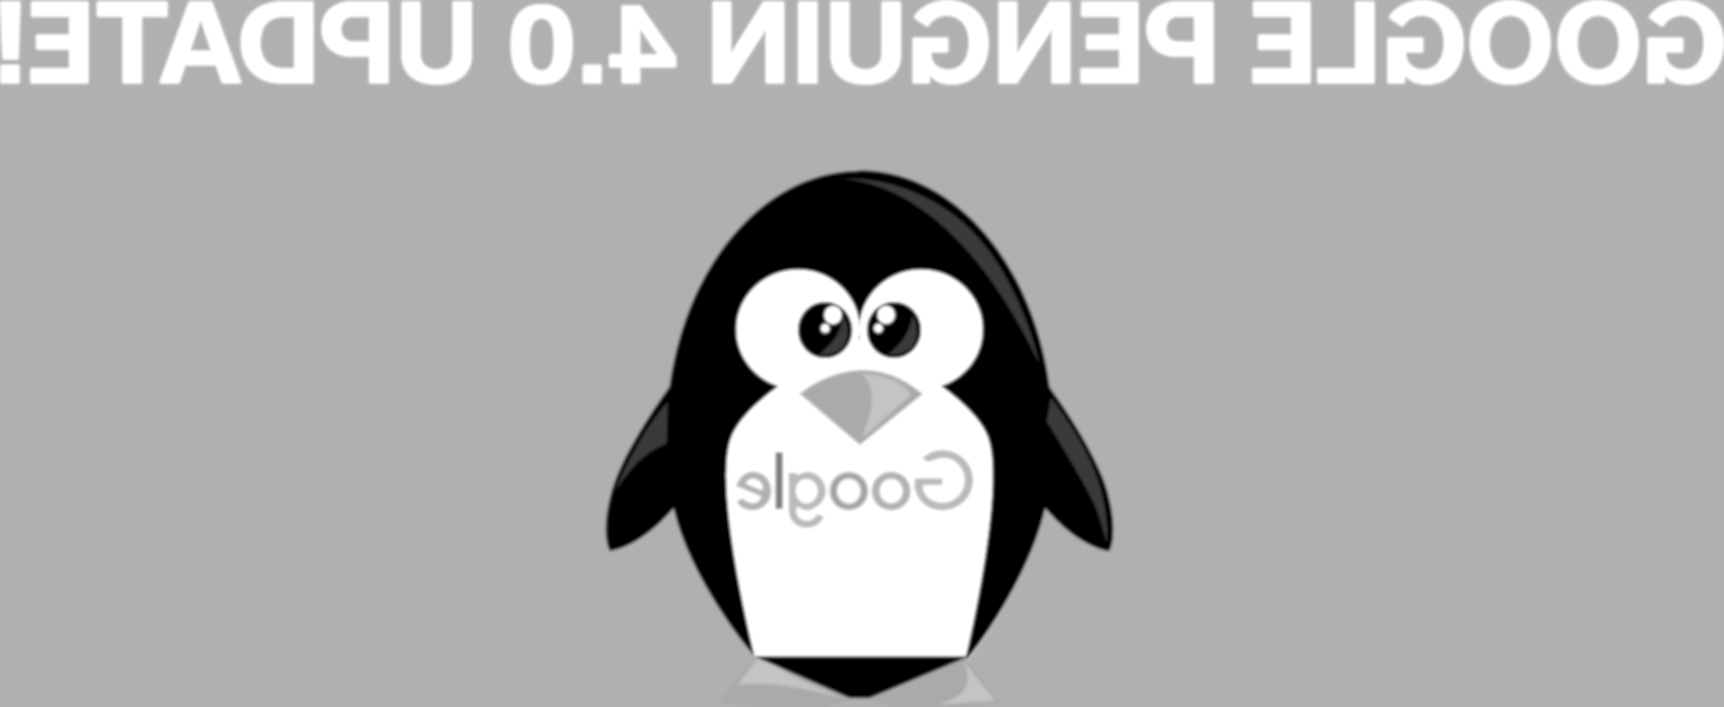 penguin-40.jpg